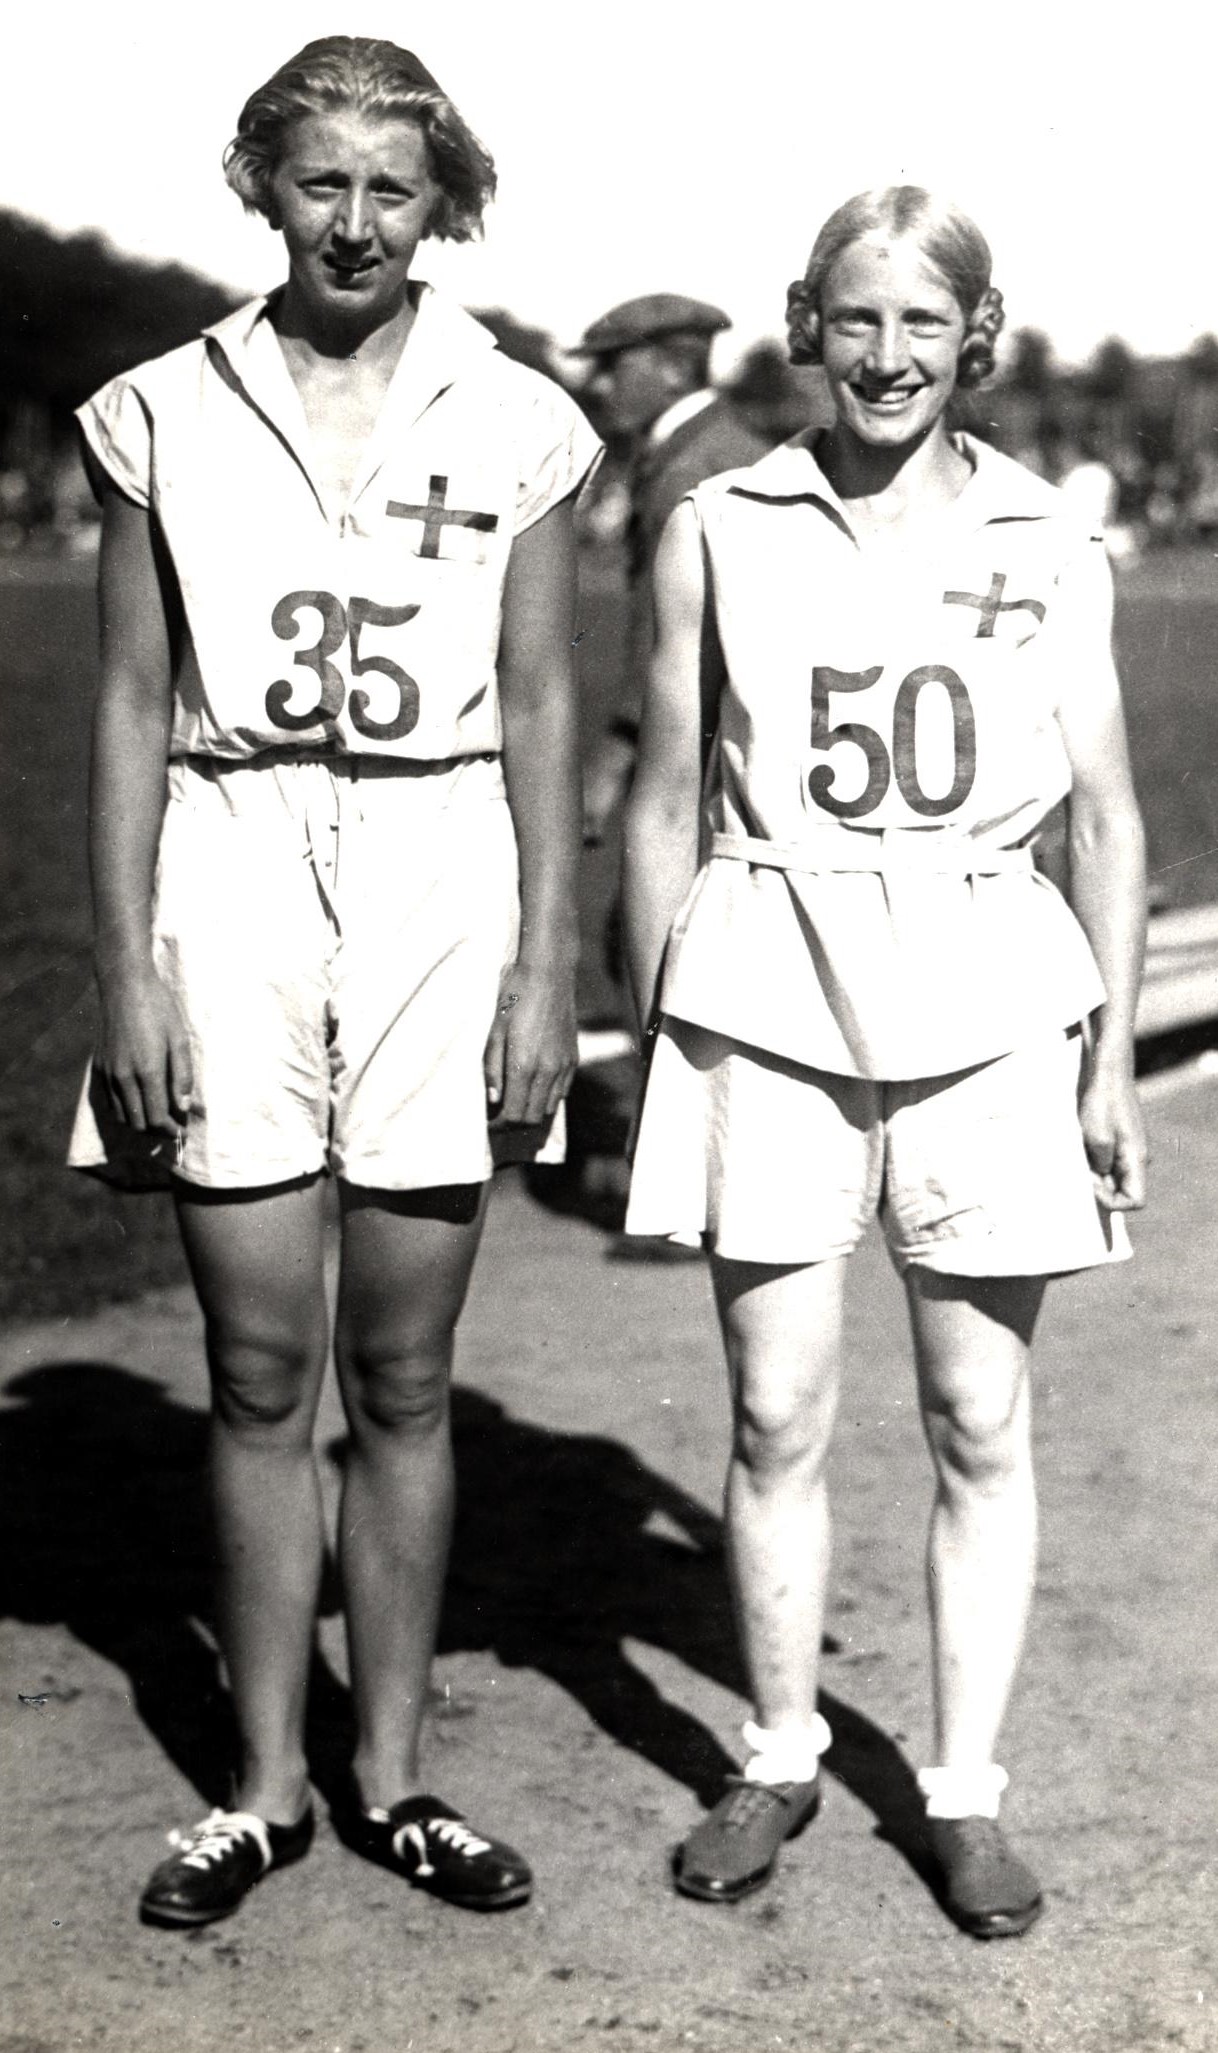 Inga Gentzel (till vänster) med en annan löpare, vid Andra Internationella Kvinnliga Idrottsspelen  i Göteborg, 1926. Foto: Bertil Norberg, Svenska Bildcentralen (KvinnSam, Göteborgs universitetsbibliotek)